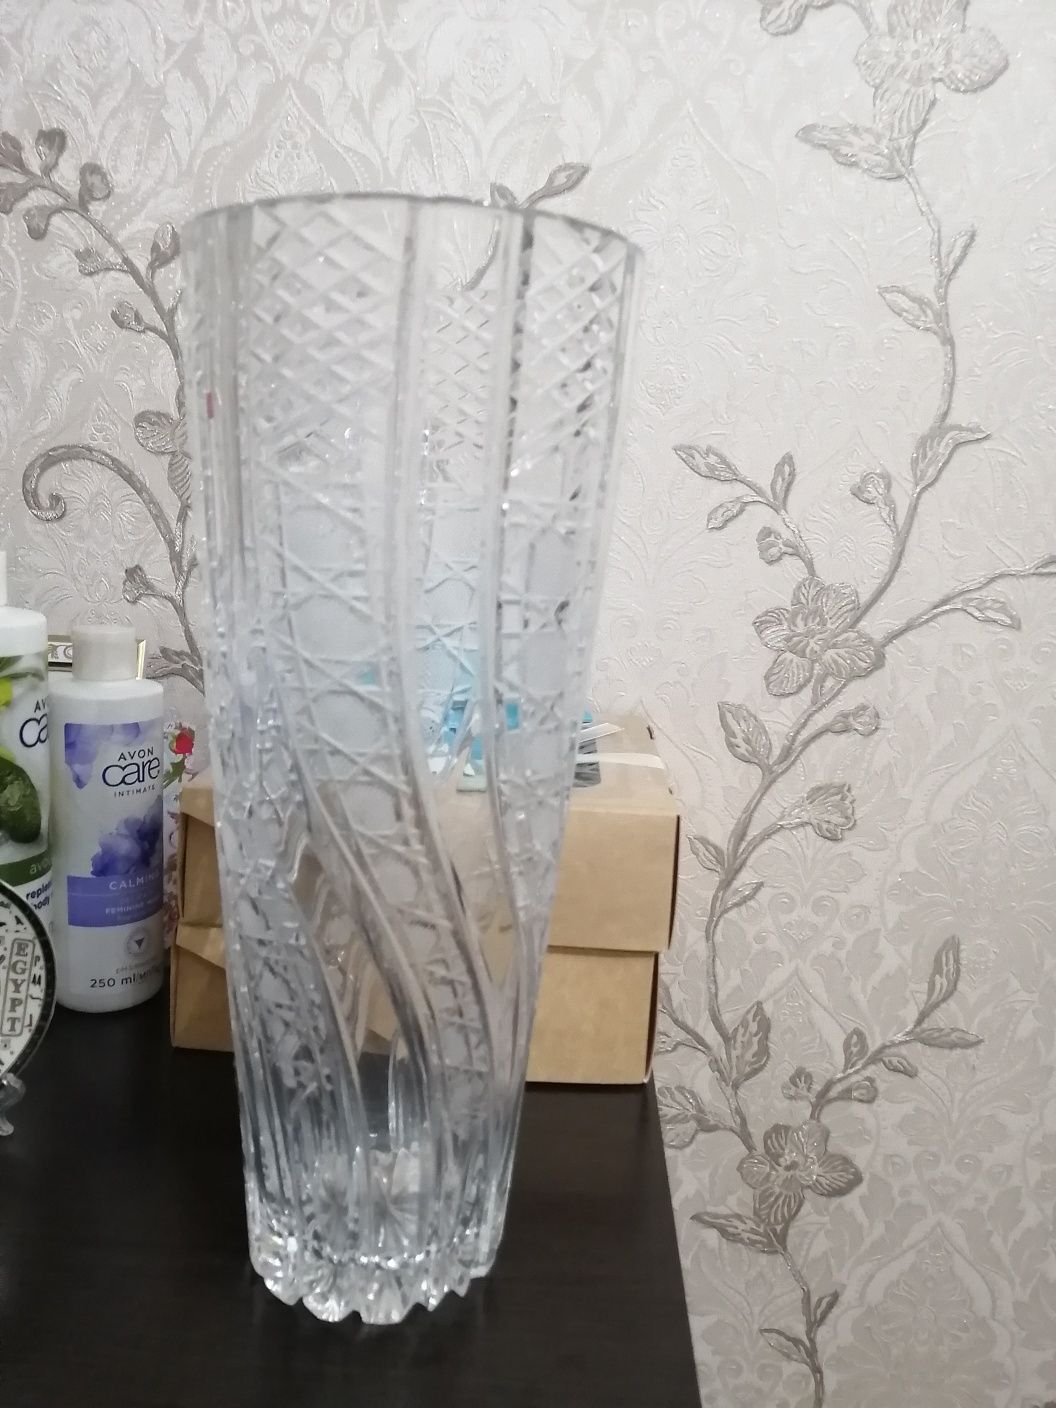 Продаю хрустальную вазу в отличном состоянии высокого качества